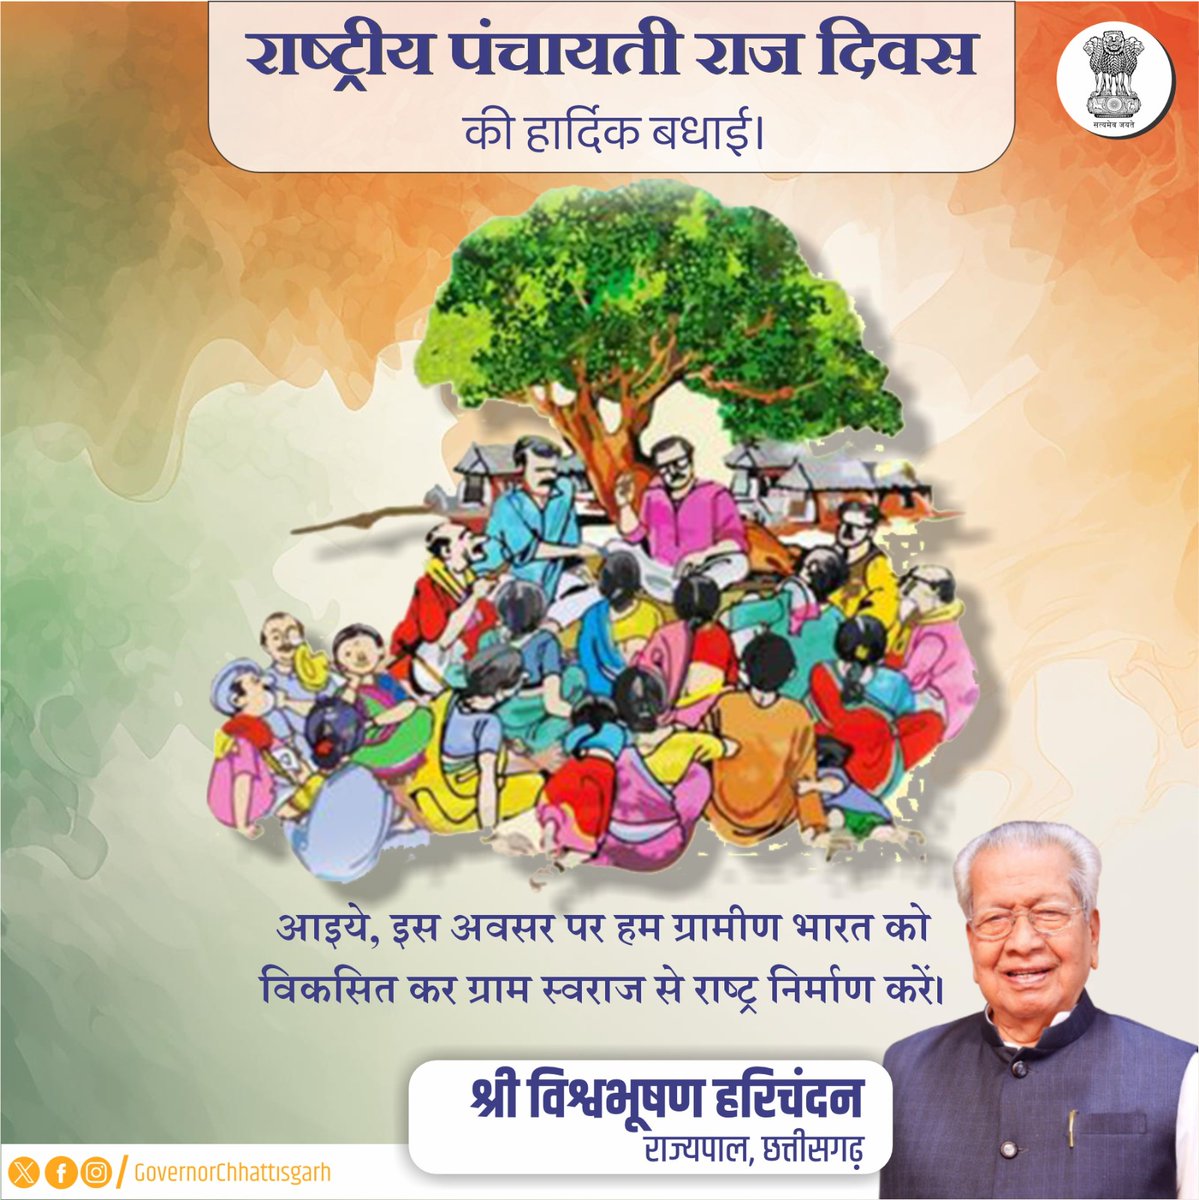 राष्ट्रीय पंचायती राज दिवस की हार्दिक बधाई। आइये, इस अवसर पर हम ग्रामीण भारत को विकसित कर ग्राम स्वराज से राष्ट्र निर्माण करें।